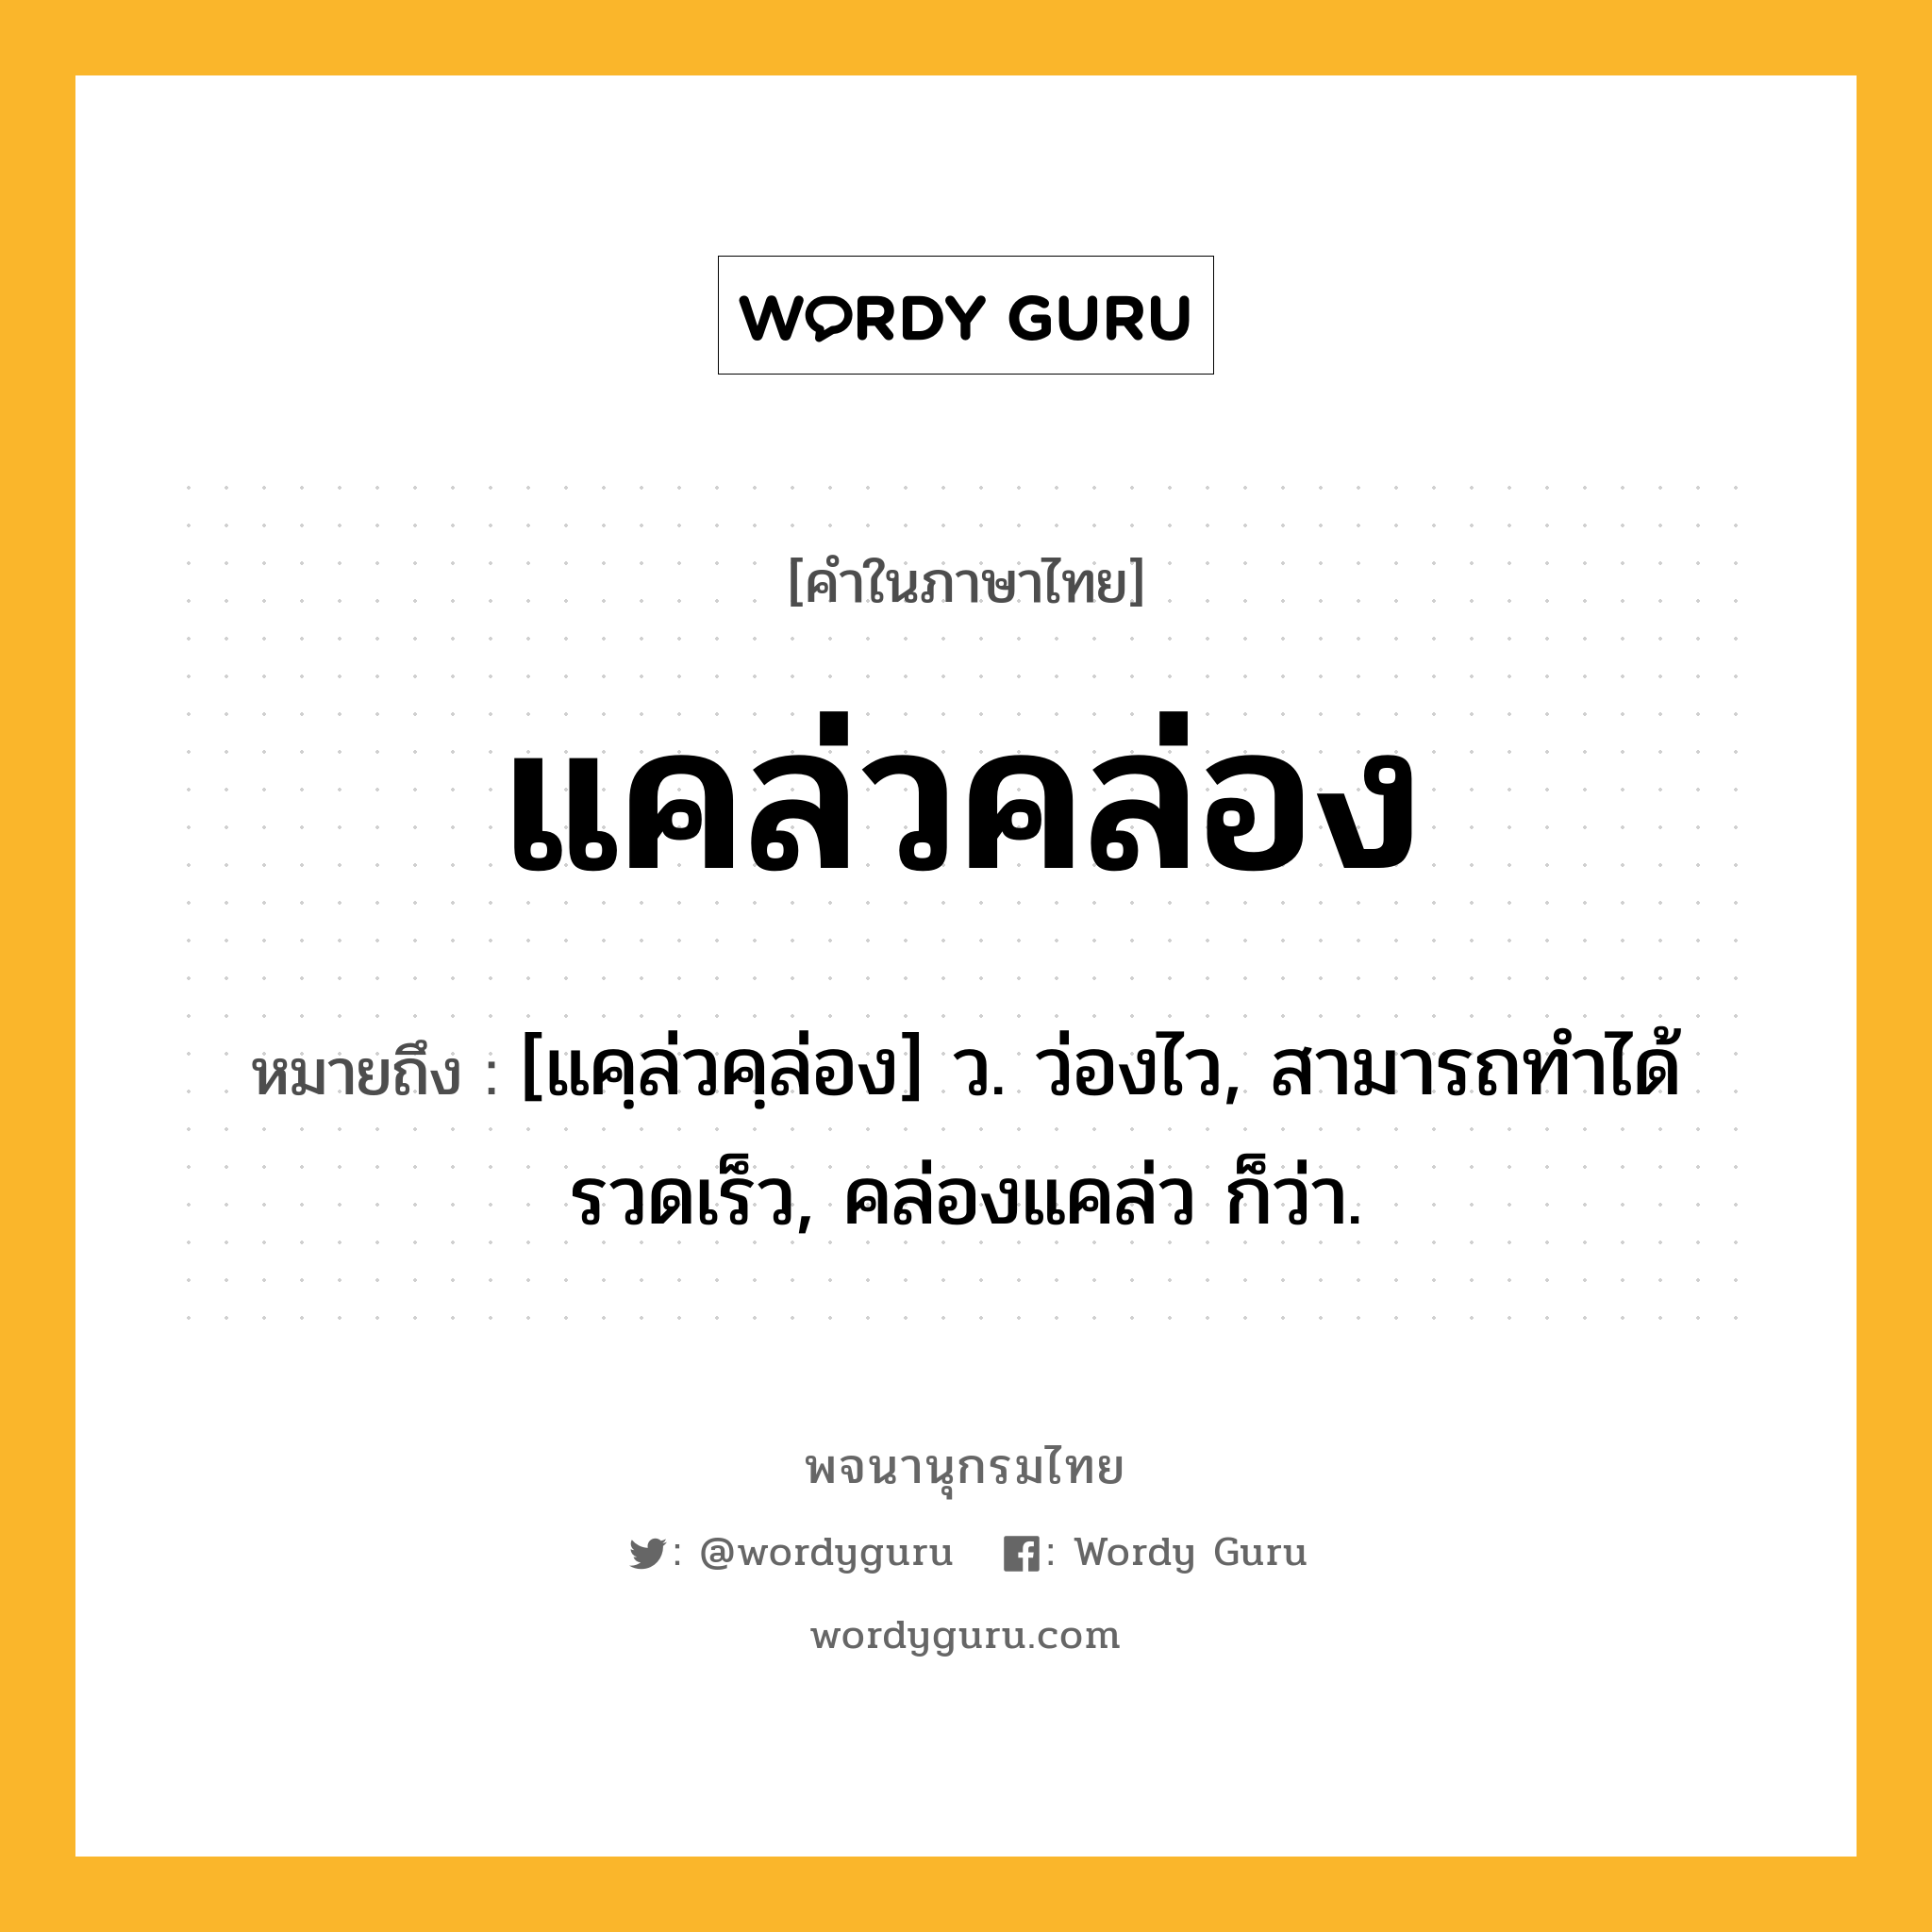 แคล่วคล่อง หมายถึงอะไร?, คำในภาษาไทย แคล่วคล่อง หมายถึง [แคฺล่วคฺล่อง] ว. ว่องไว, สามารถทําได้รวดเร็ว, คล่องแคล่ว ก็ว่า.